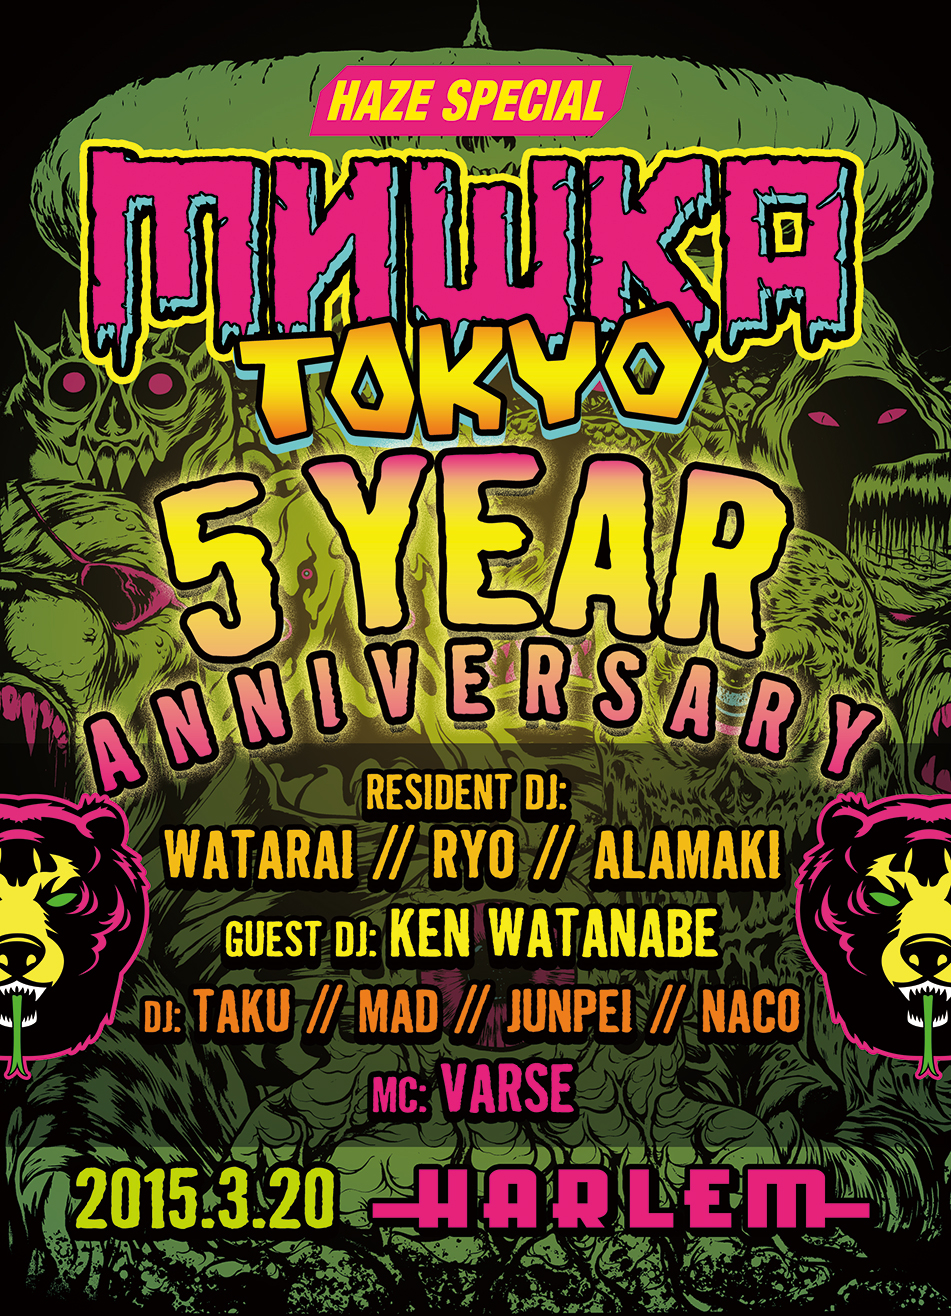 Mishka 3 20 Fri Mishka Tokyo 5 Year Anniversary Harlem Calquinto Co Ltd